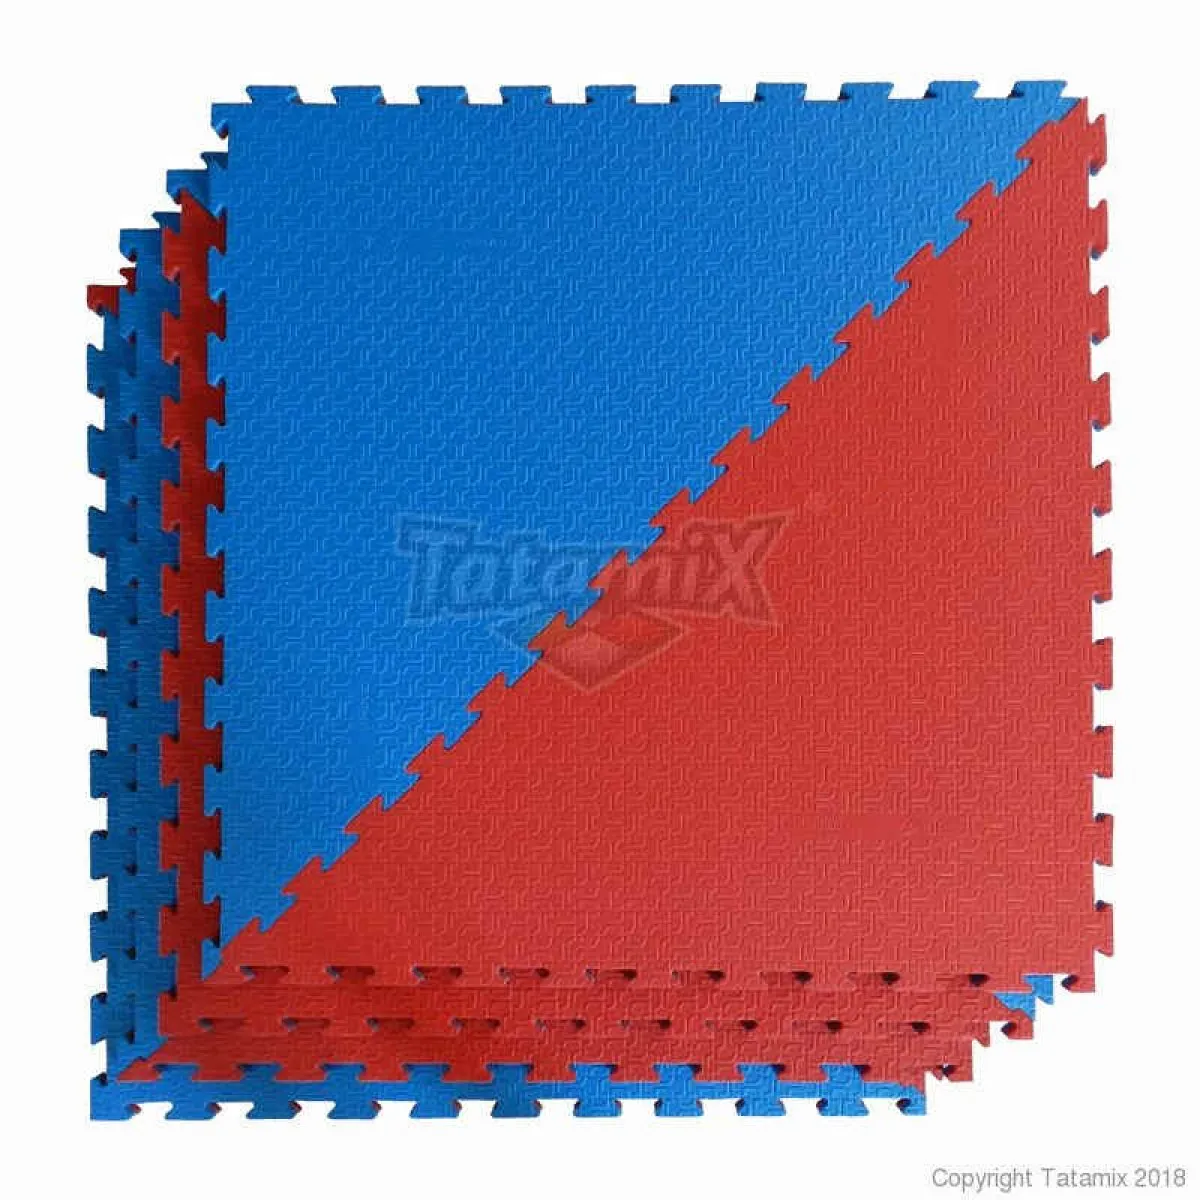 Taekwondo mat red/blue octagon